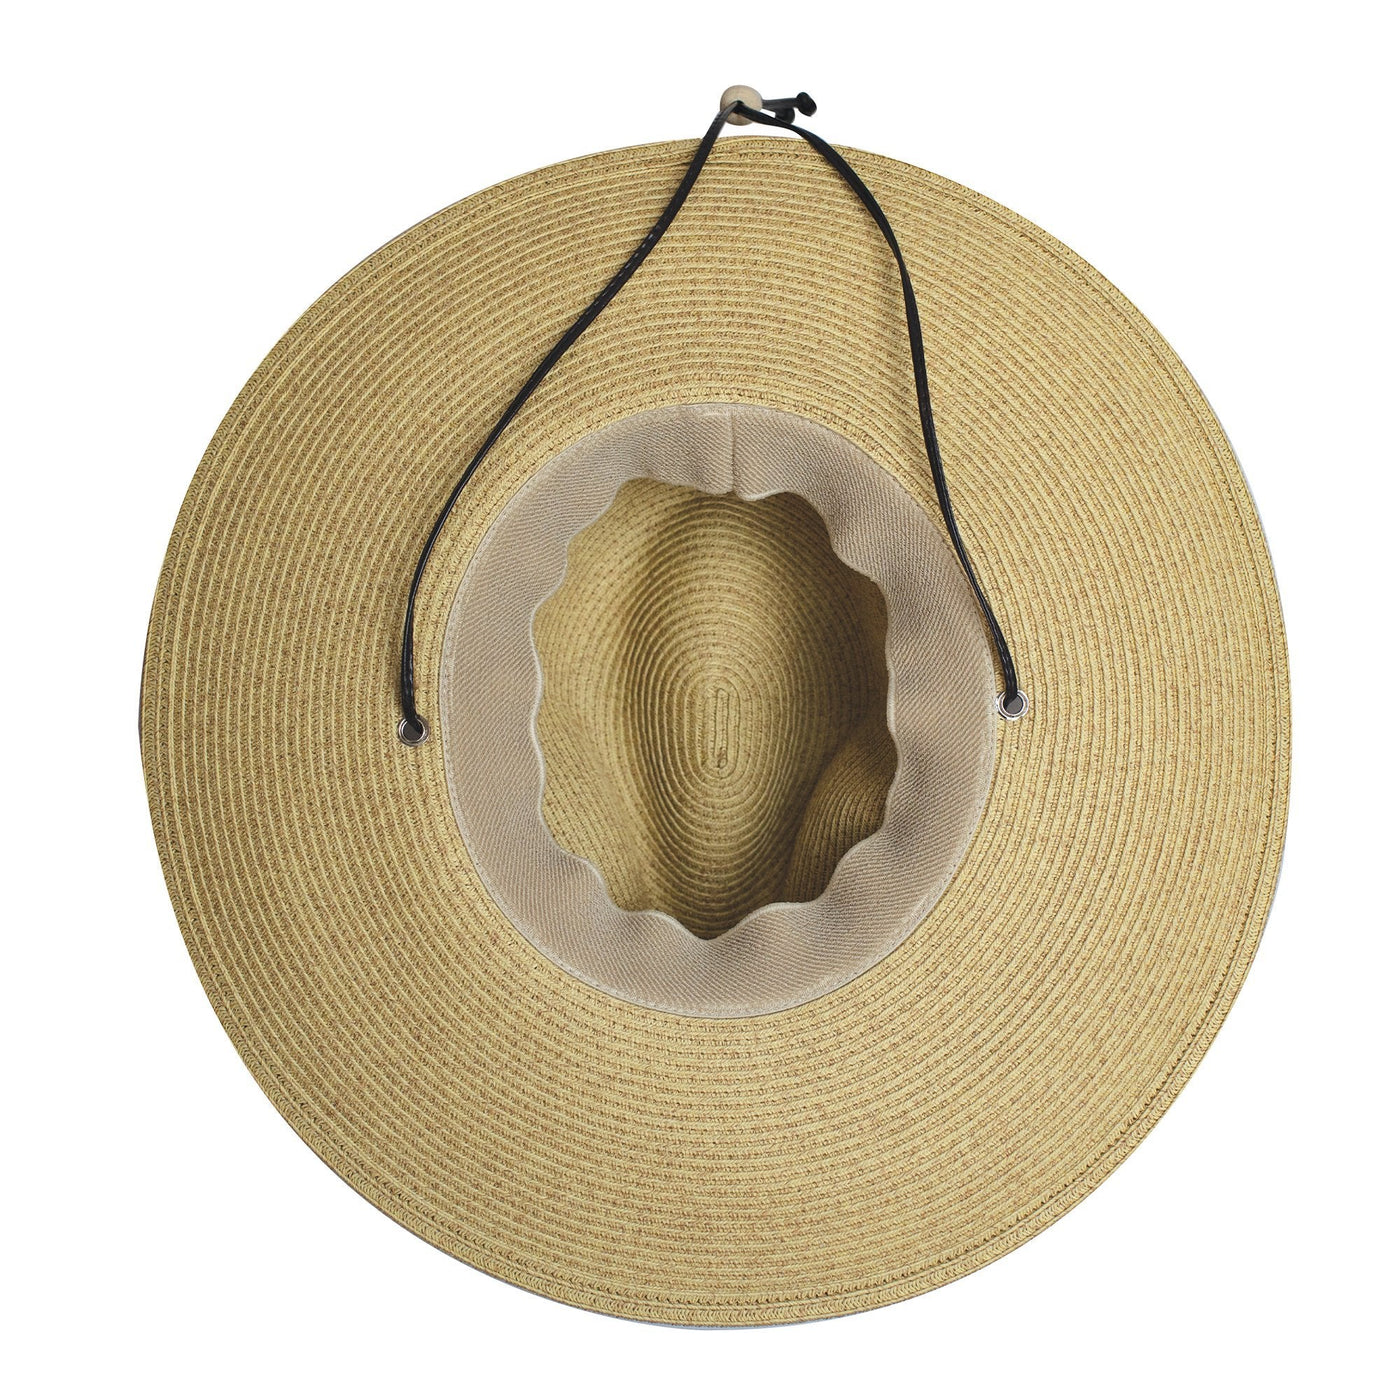 SUN BRIM - El Campo 4" Brim Sun Hat - UPF50 Sun Protection With Chin Cord - San Diego Hat Co.